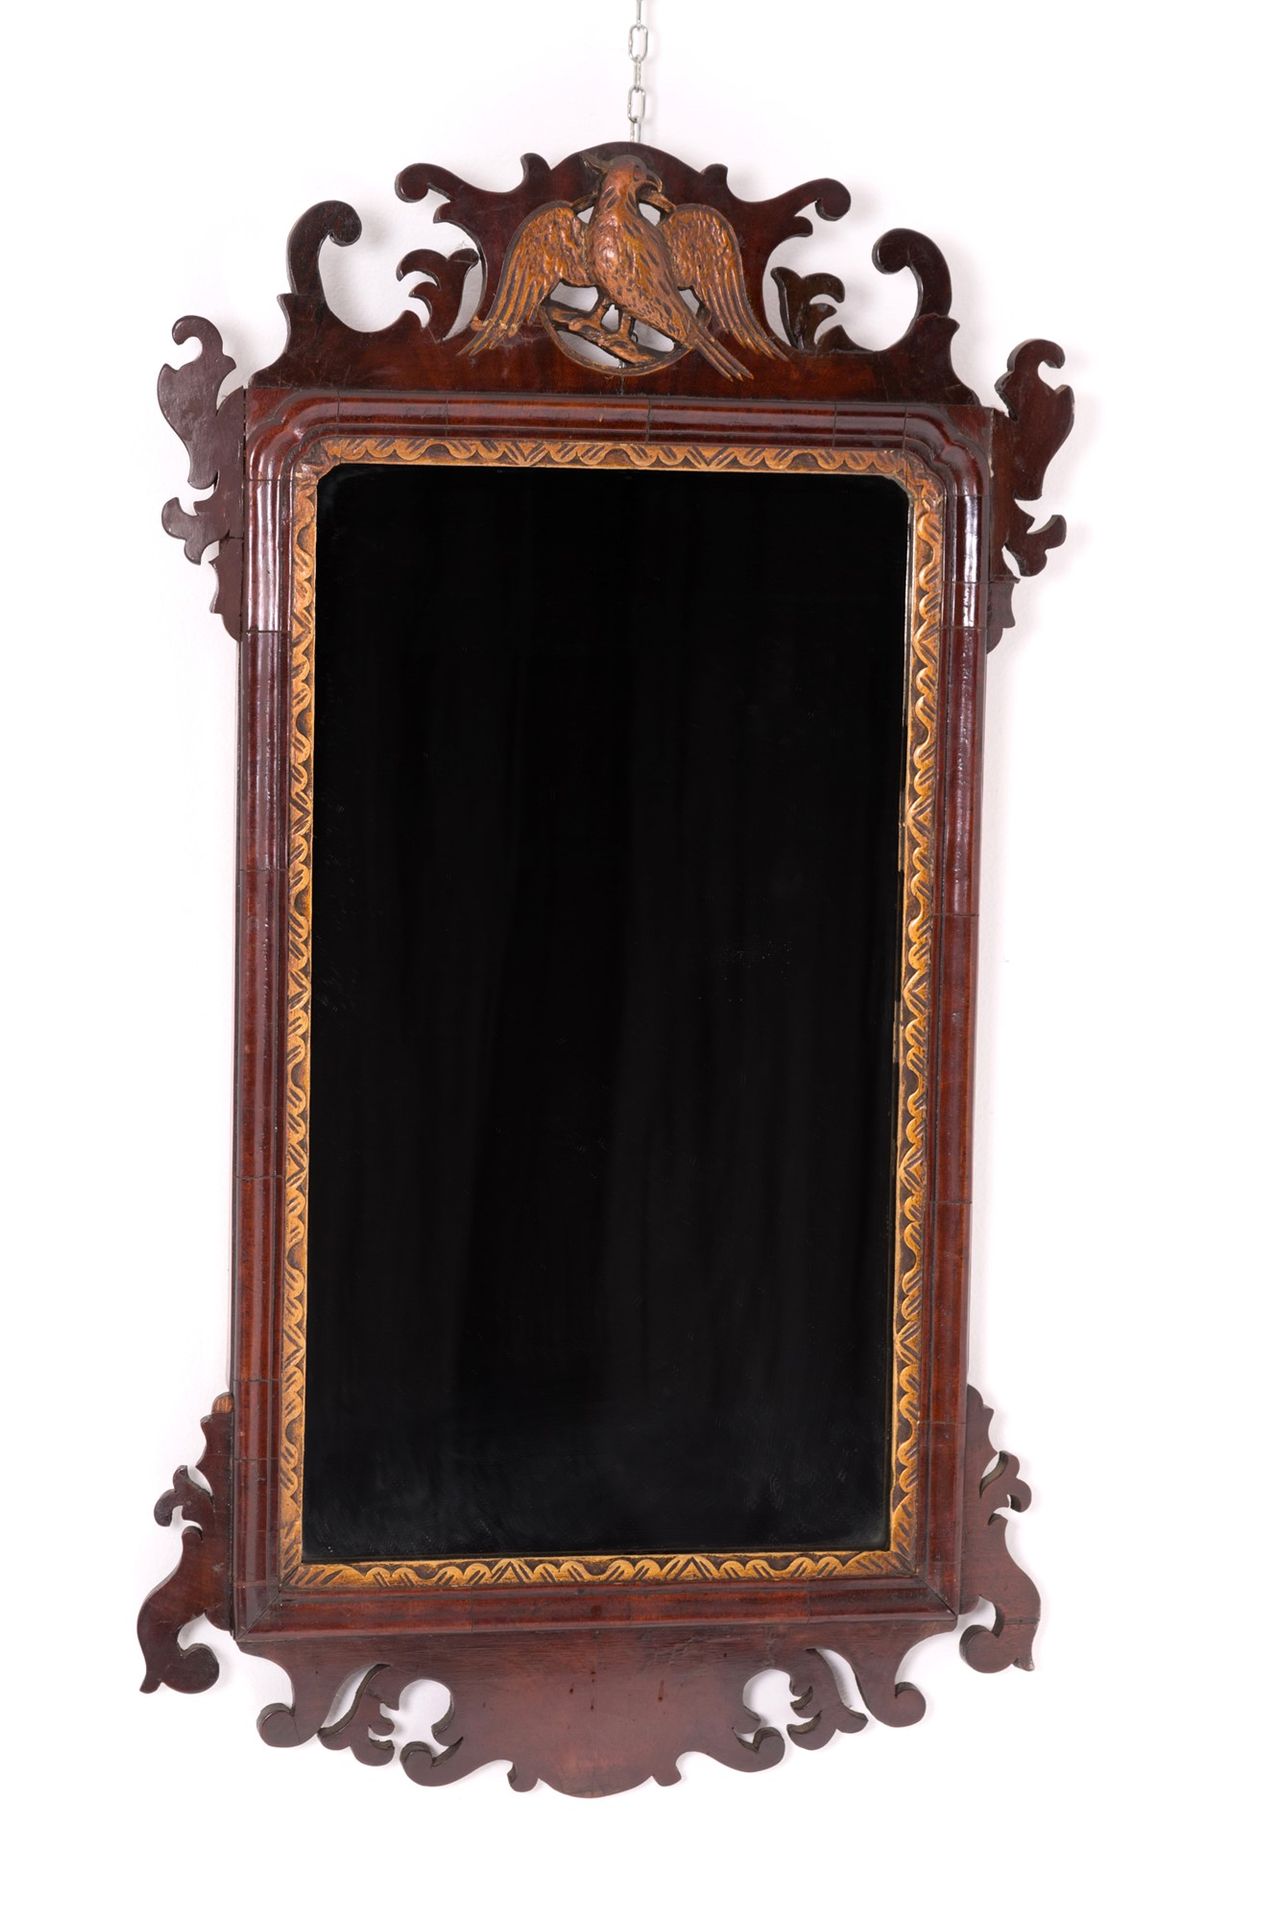 Small mirror Spiegel aus Mahagoniholz mit vergoldeten Profilen und durchbrochene&hellip;